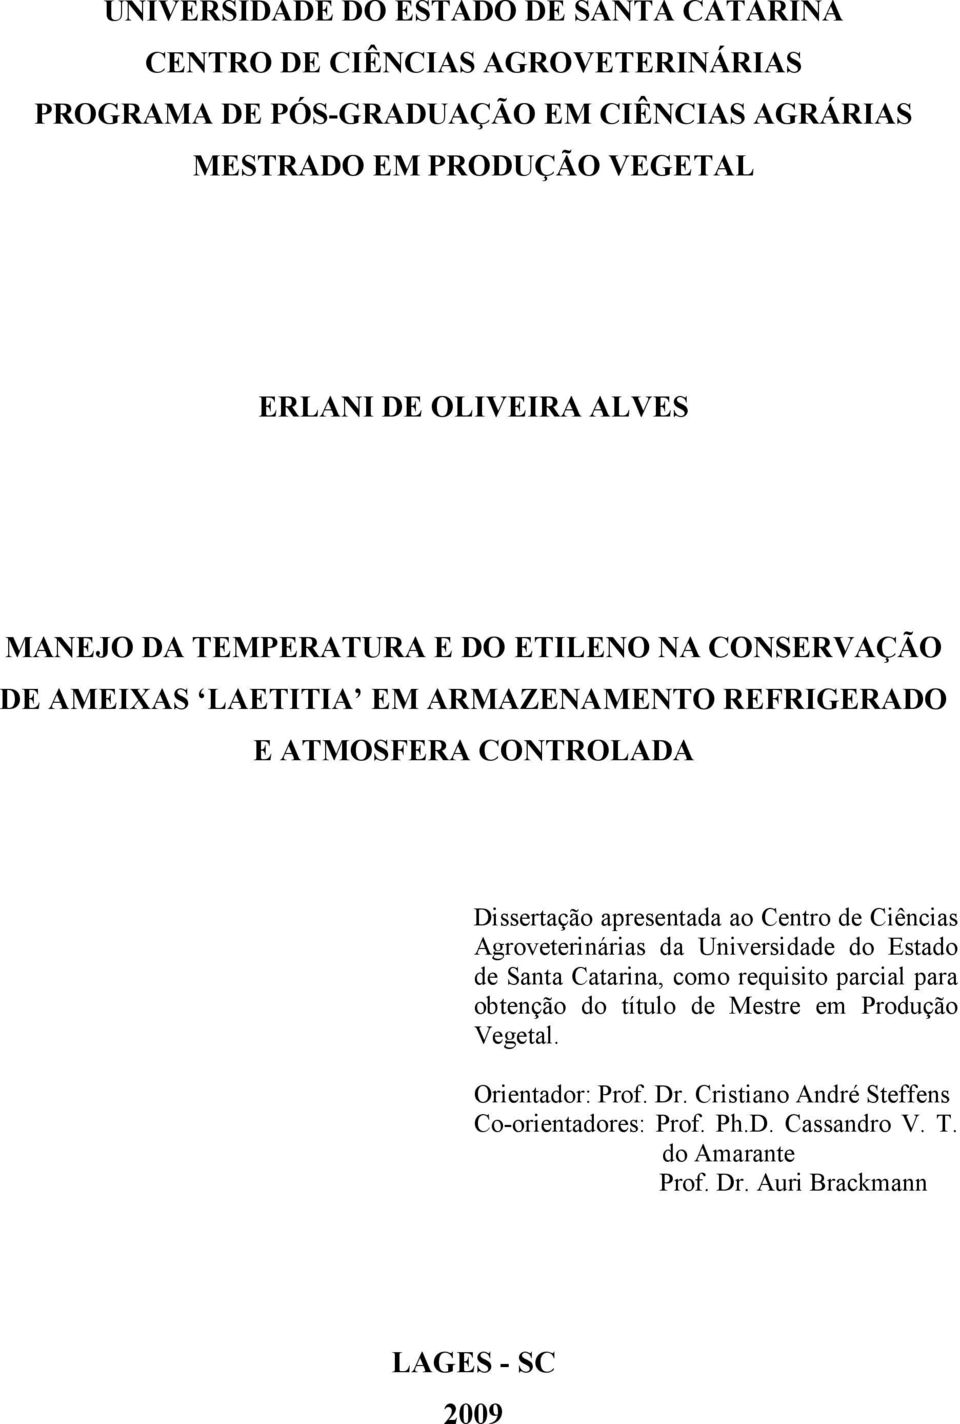 Dissertação apresentada ao Centro de Ciências Agroveterinárias da Universidade do Estado de Santa Catarina, como requisito parcial para obtenção do título de